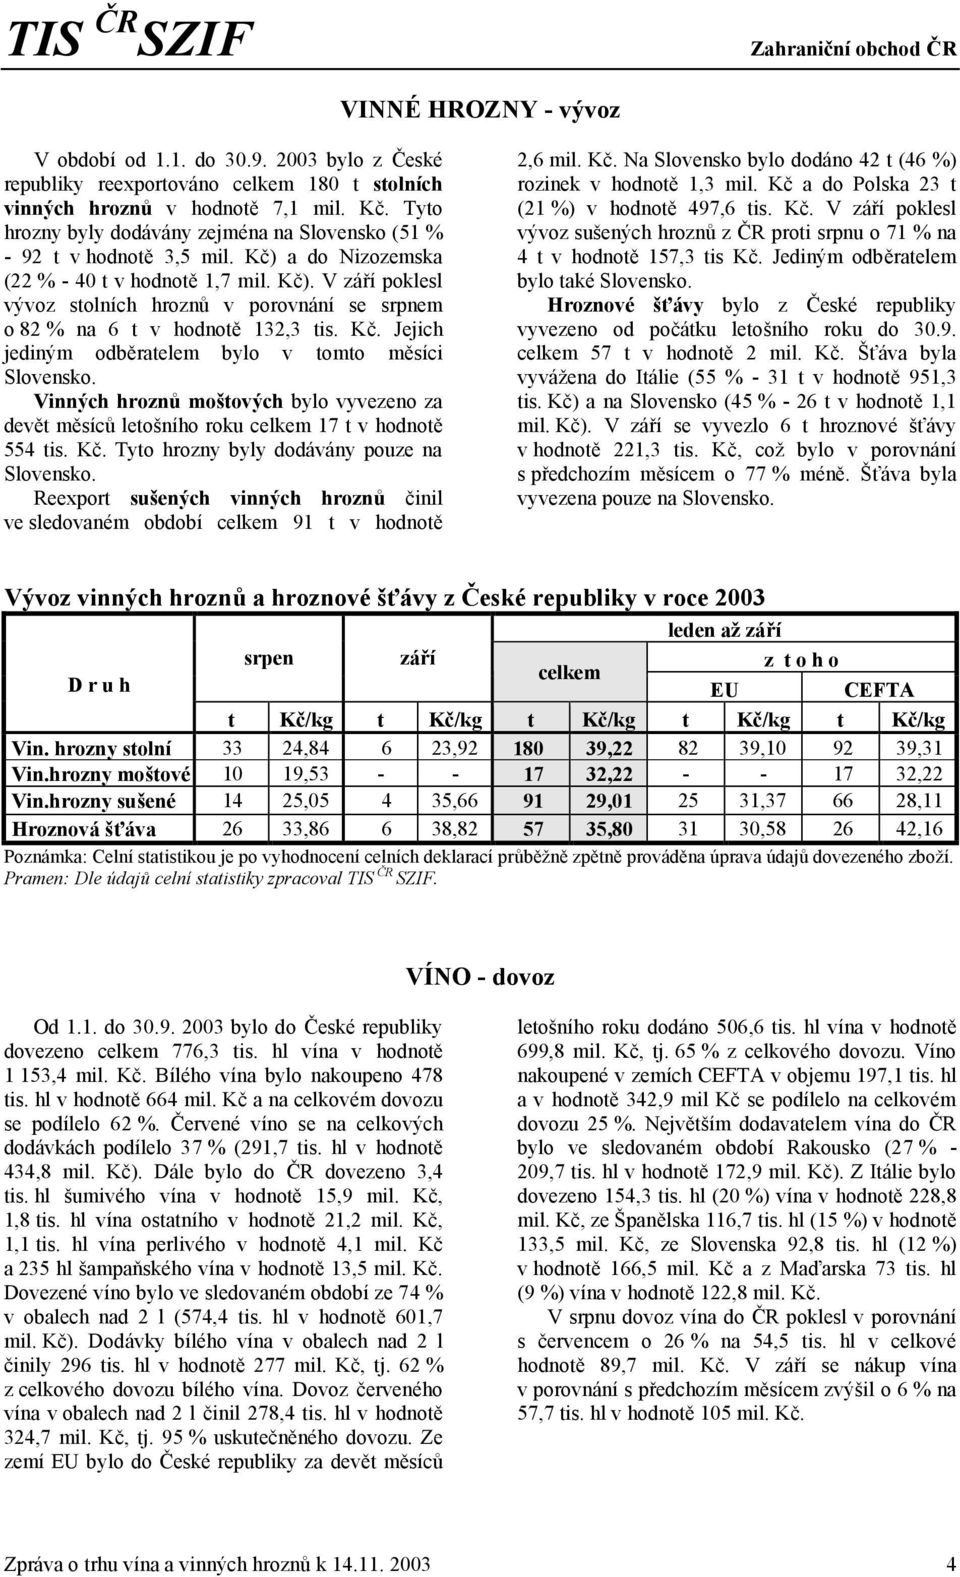 Kč. Jejich jediným odběratelem bylo v tomto měsíci Slovensko. Vinných hroznů moštových bylo vyvezeno za devět měsíců letošního roku celkem 17 t v hodnotě 554 tis. Kč.